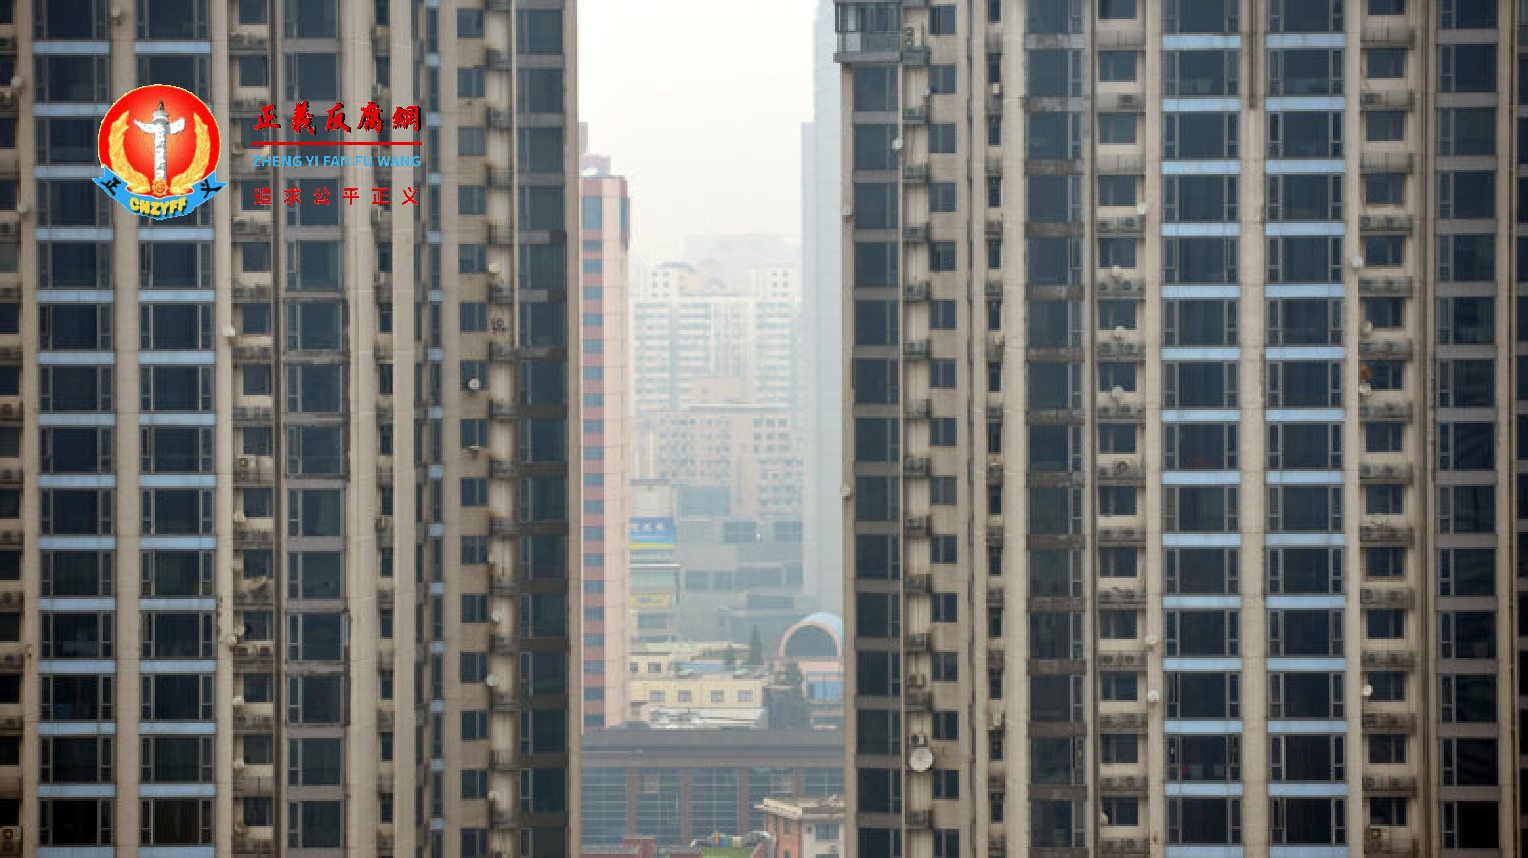 恒大等房地产企业近期陷入严重债务危机。图为上海楼房。.png